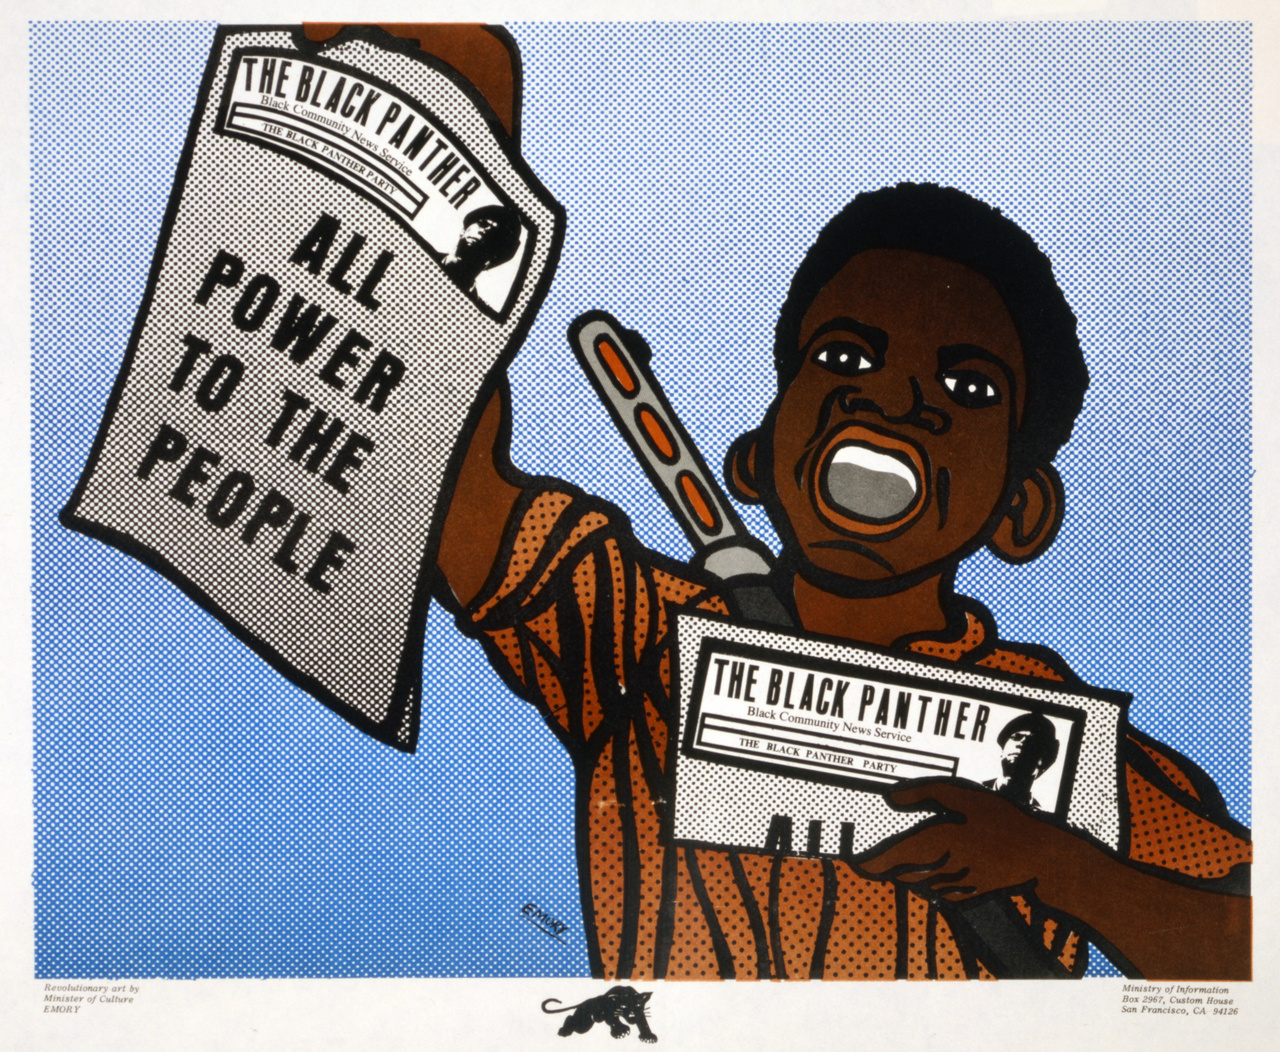 Egy újabb Emory-klasszikus 1970-ből: fiatal fegyveres rikkancs Roy Lichtensteint-idéző raszteres stílusban. "Minden hatalmat a népnek" – áll a Fekete Párducok újságjának címlapján.